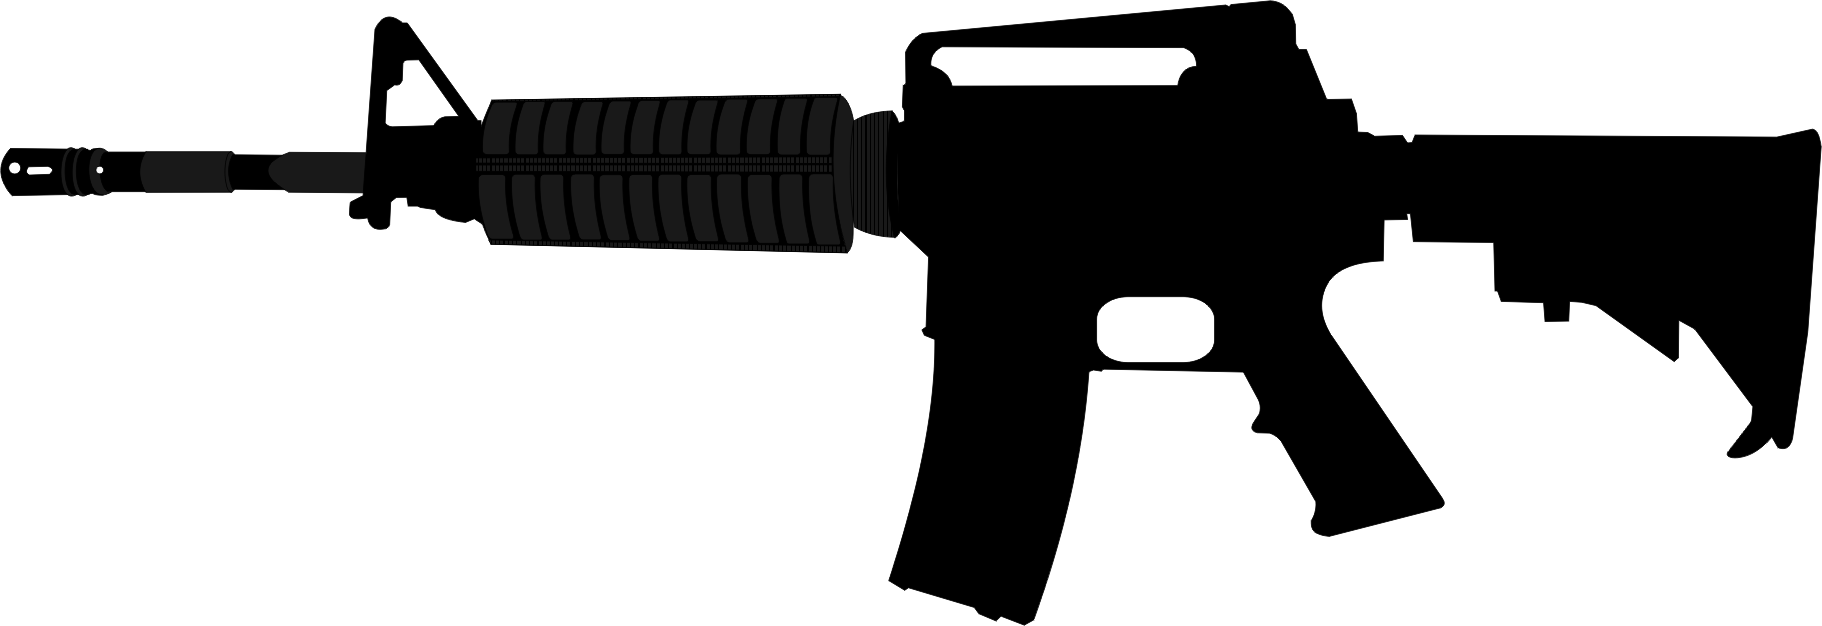 Military Gun Clip Art